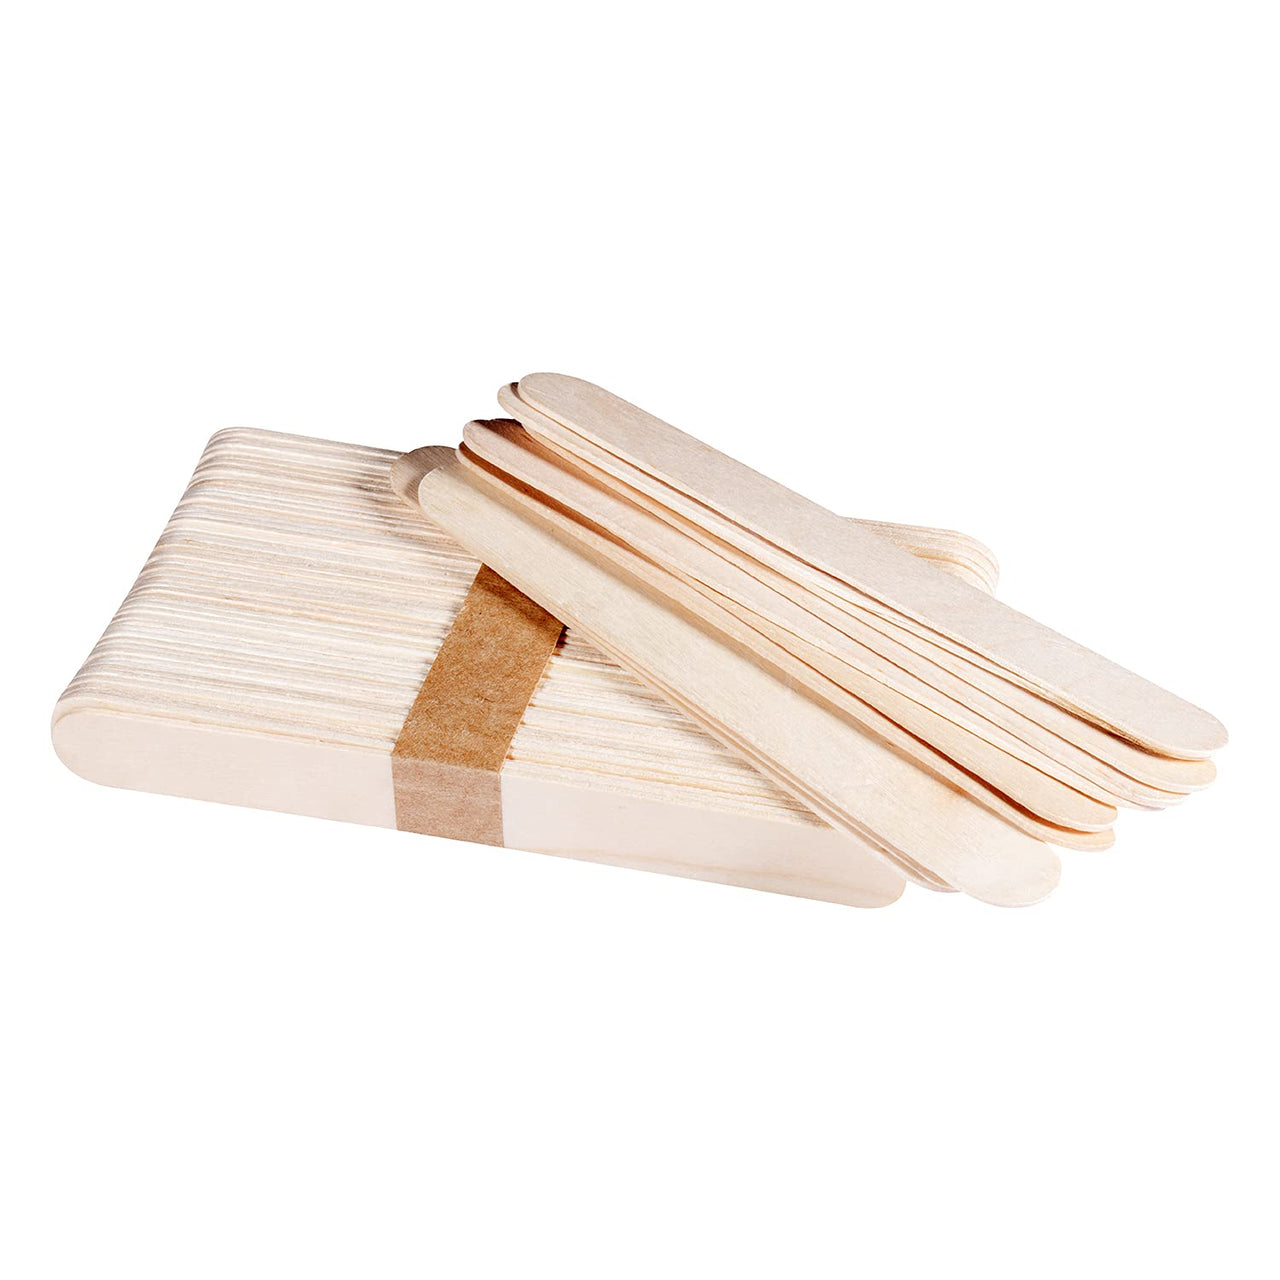 Professional Wax Wooden Stick Applicators (100 pcs)